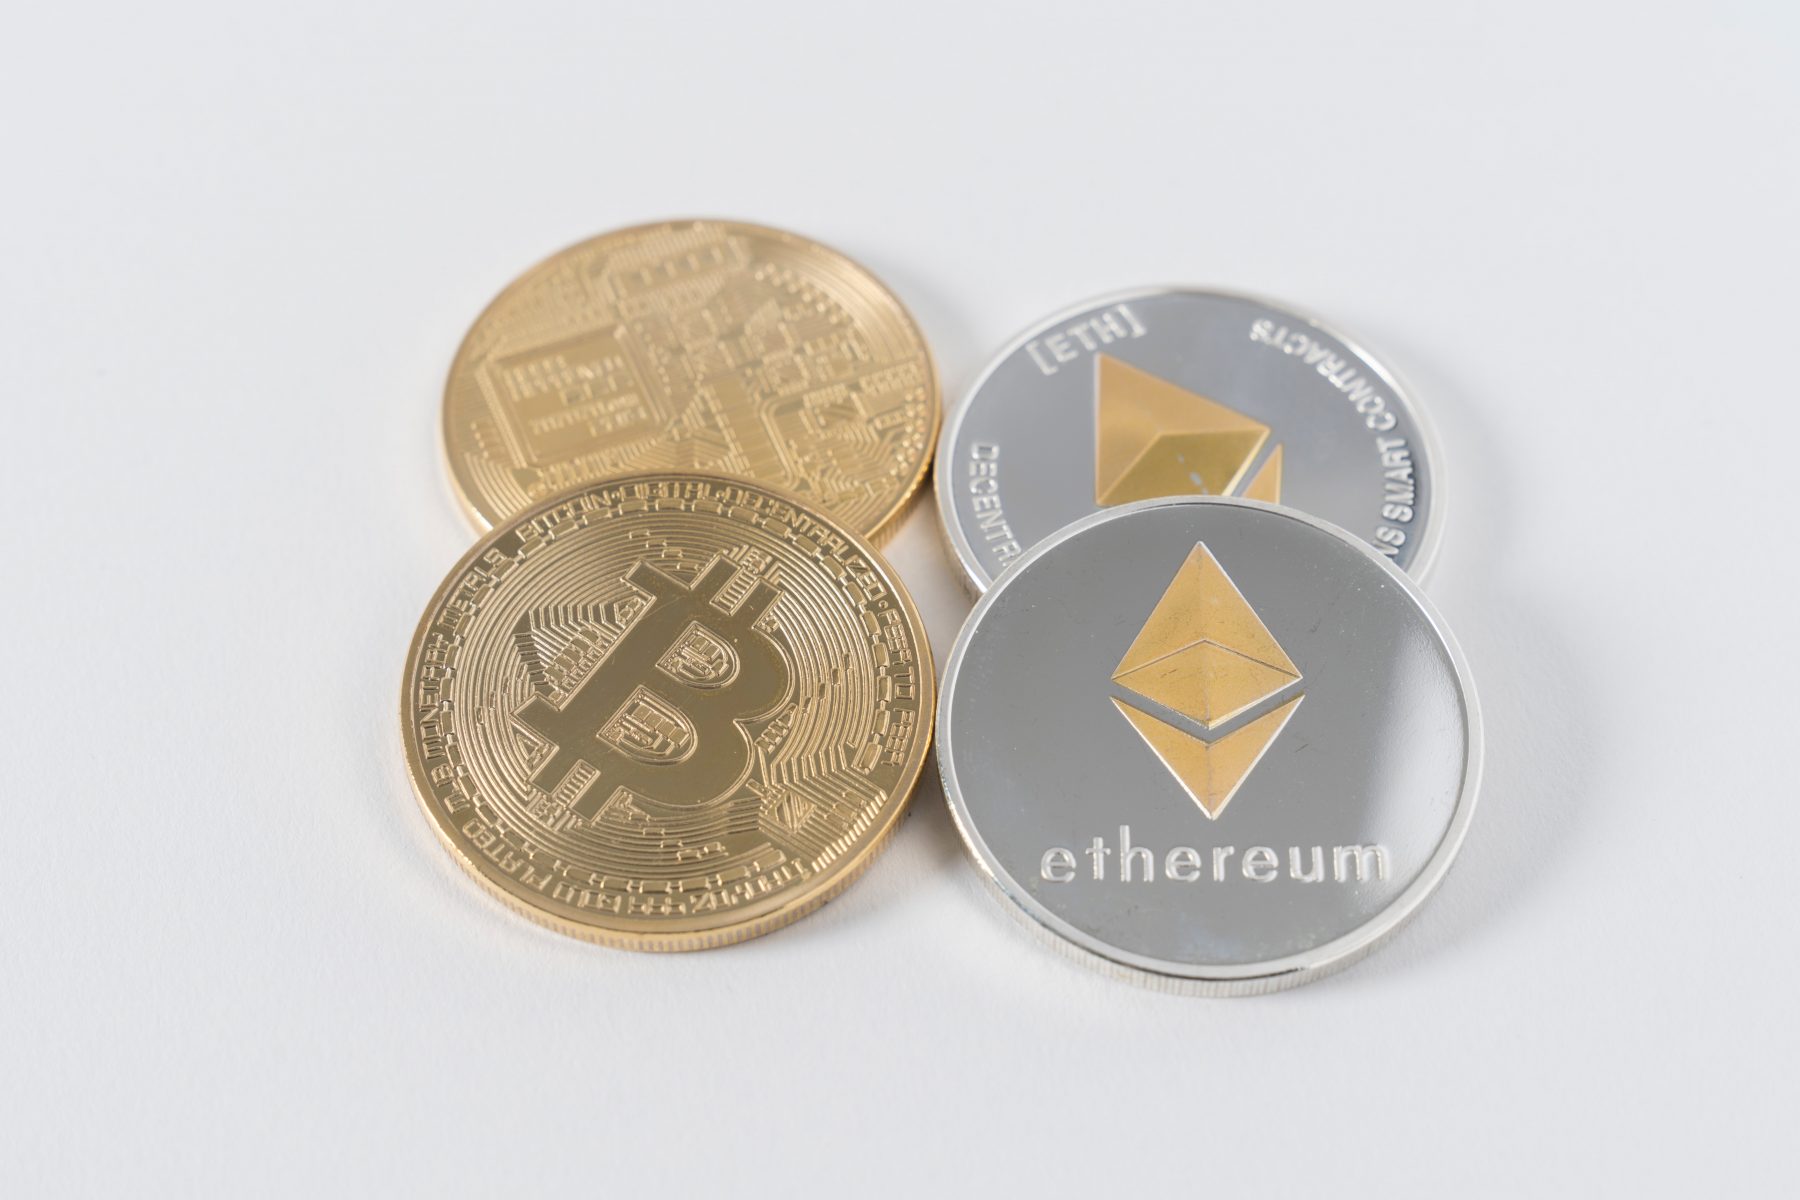 Materialne coiny Bitcoin i Ethereum, które w rzeczywistości istnieją tylko w firmacie cyfrowym